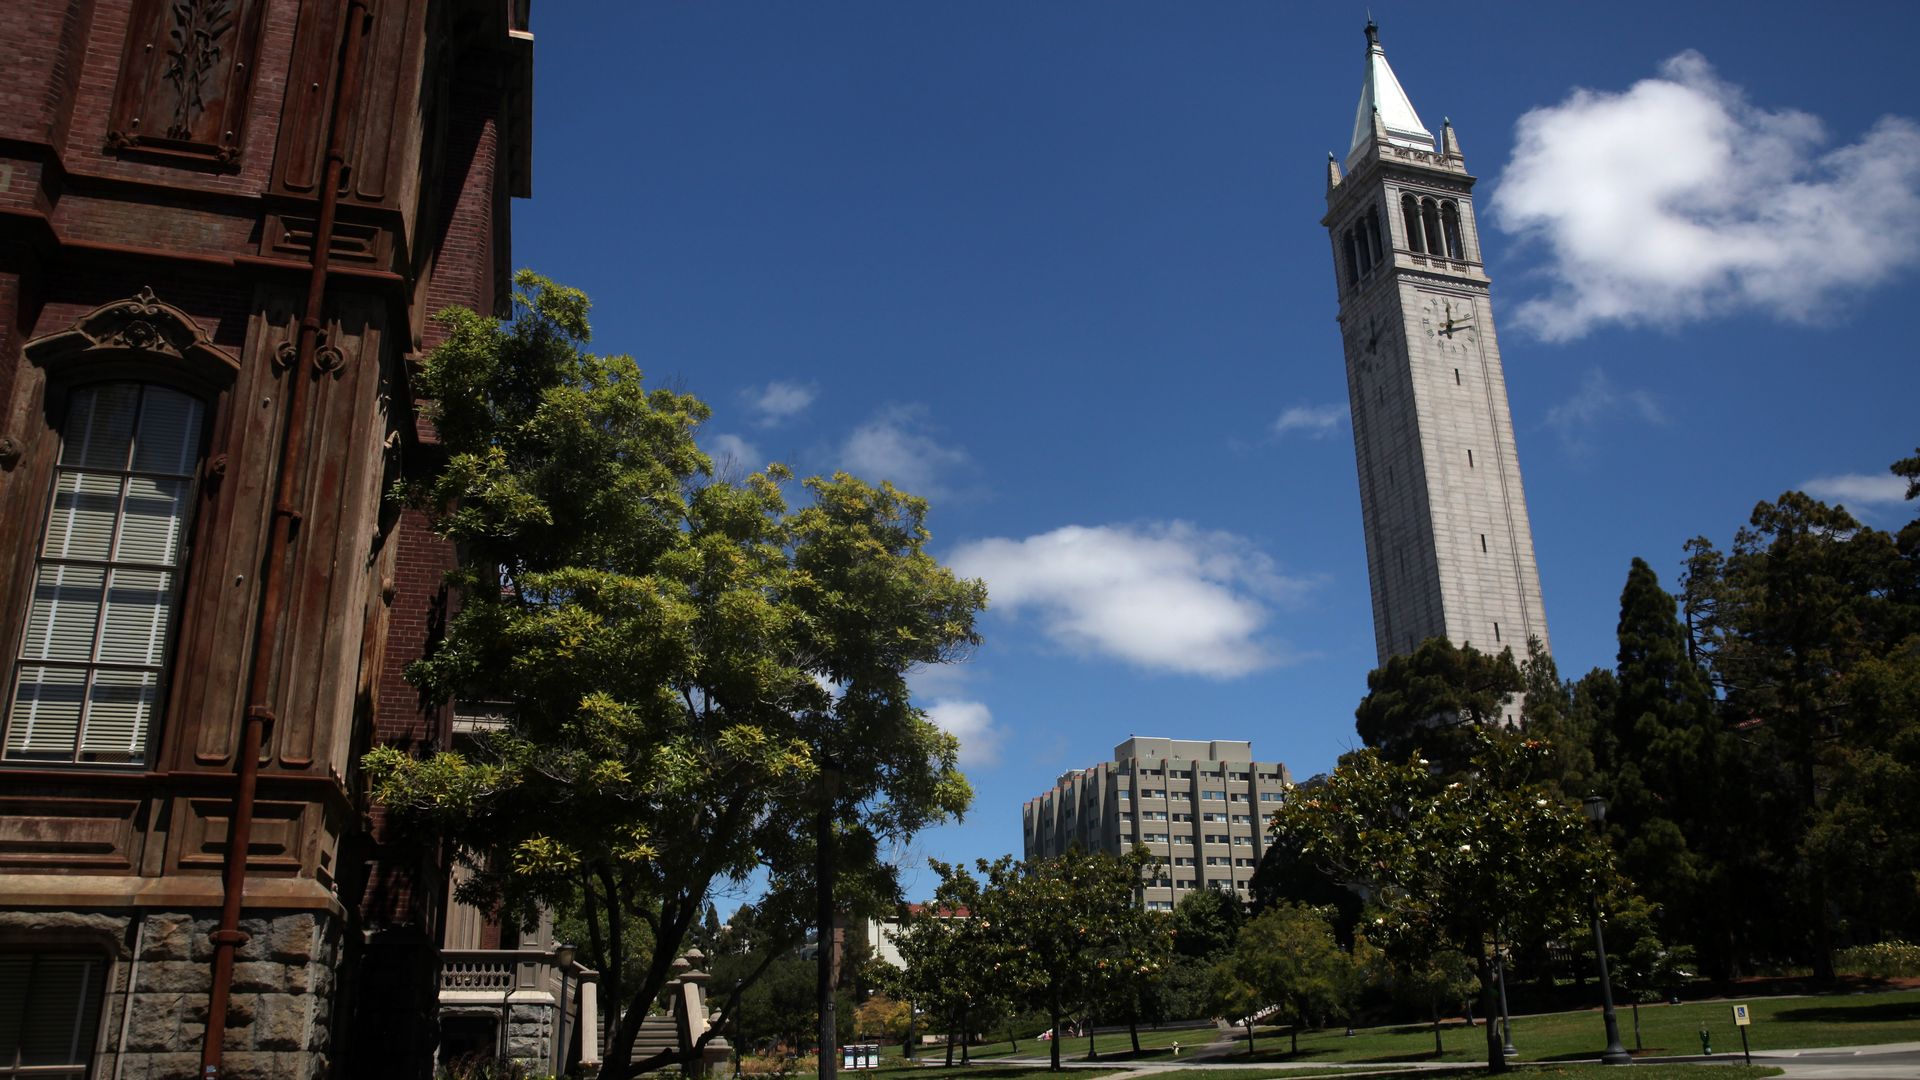 The U.C. Berkeley campus in July.